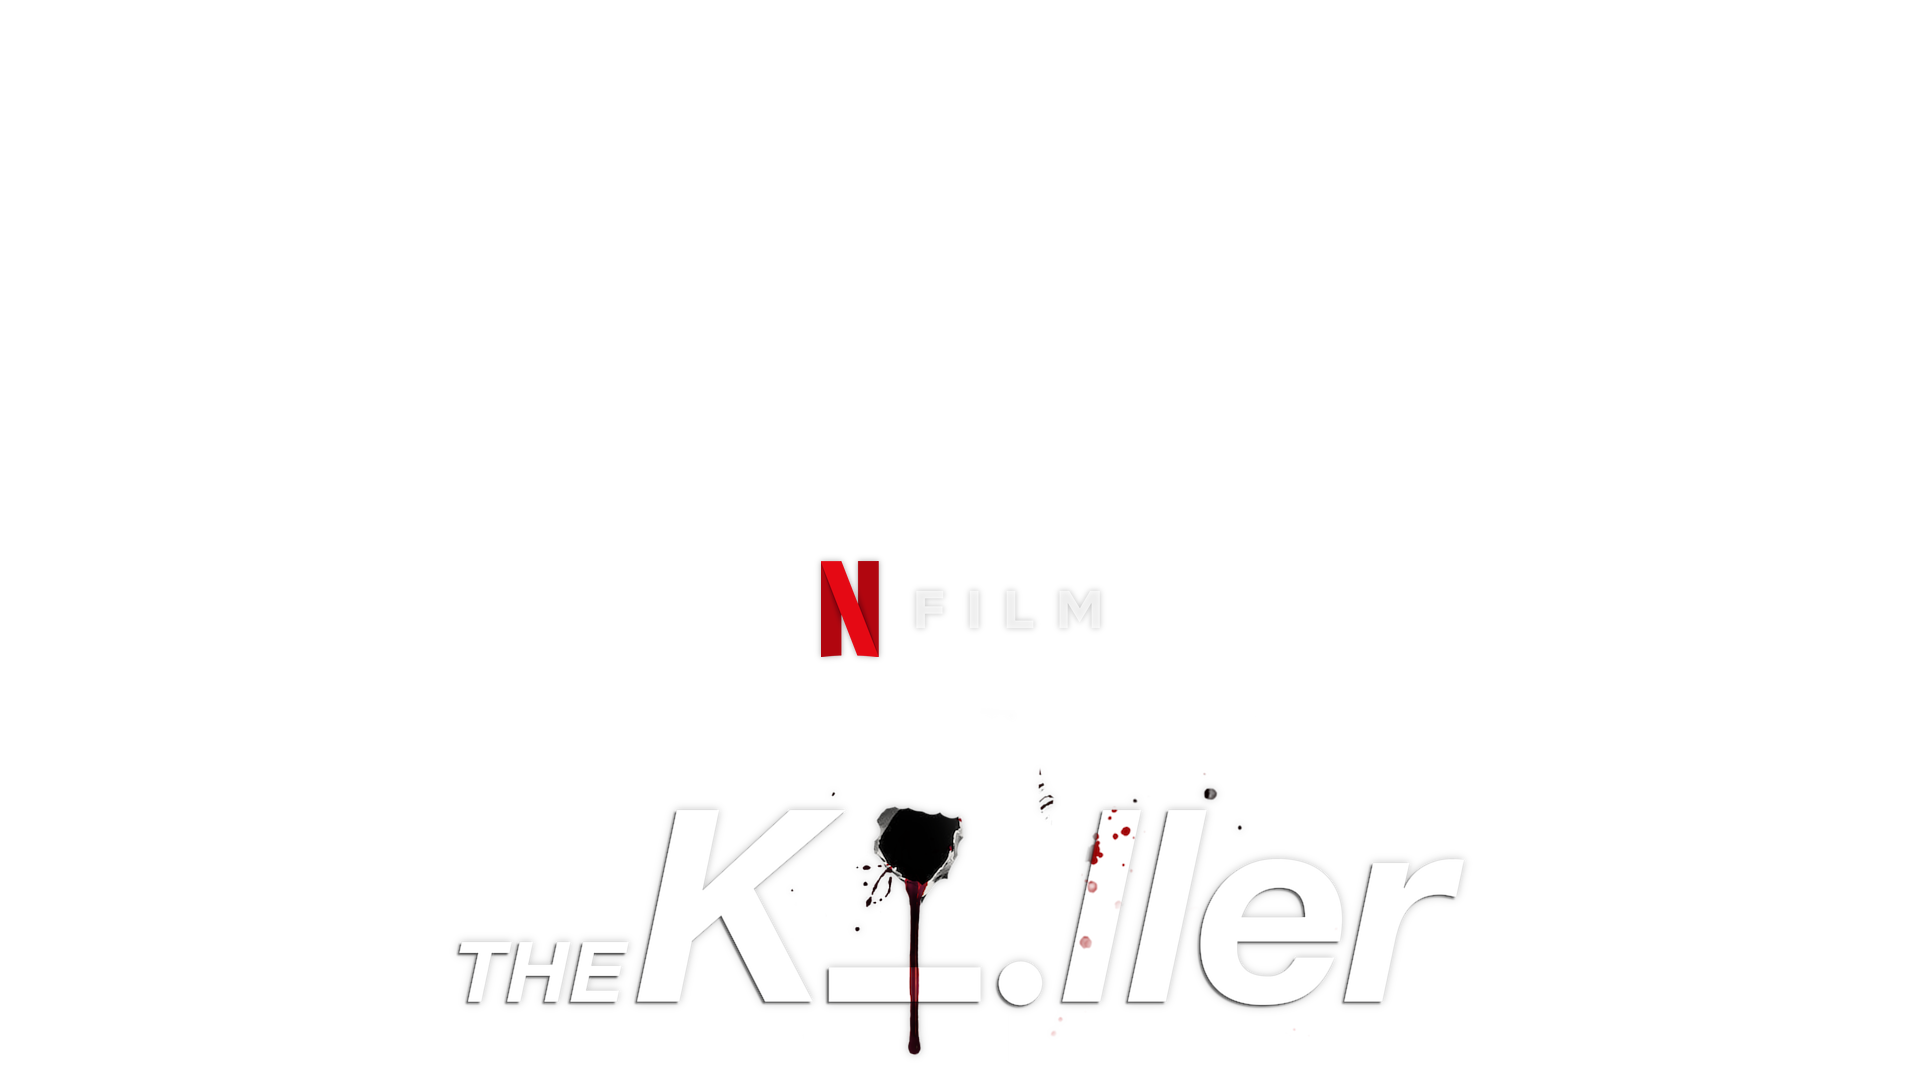 Killer Logo Vector Art PNG Images | Free Download On Pngtree